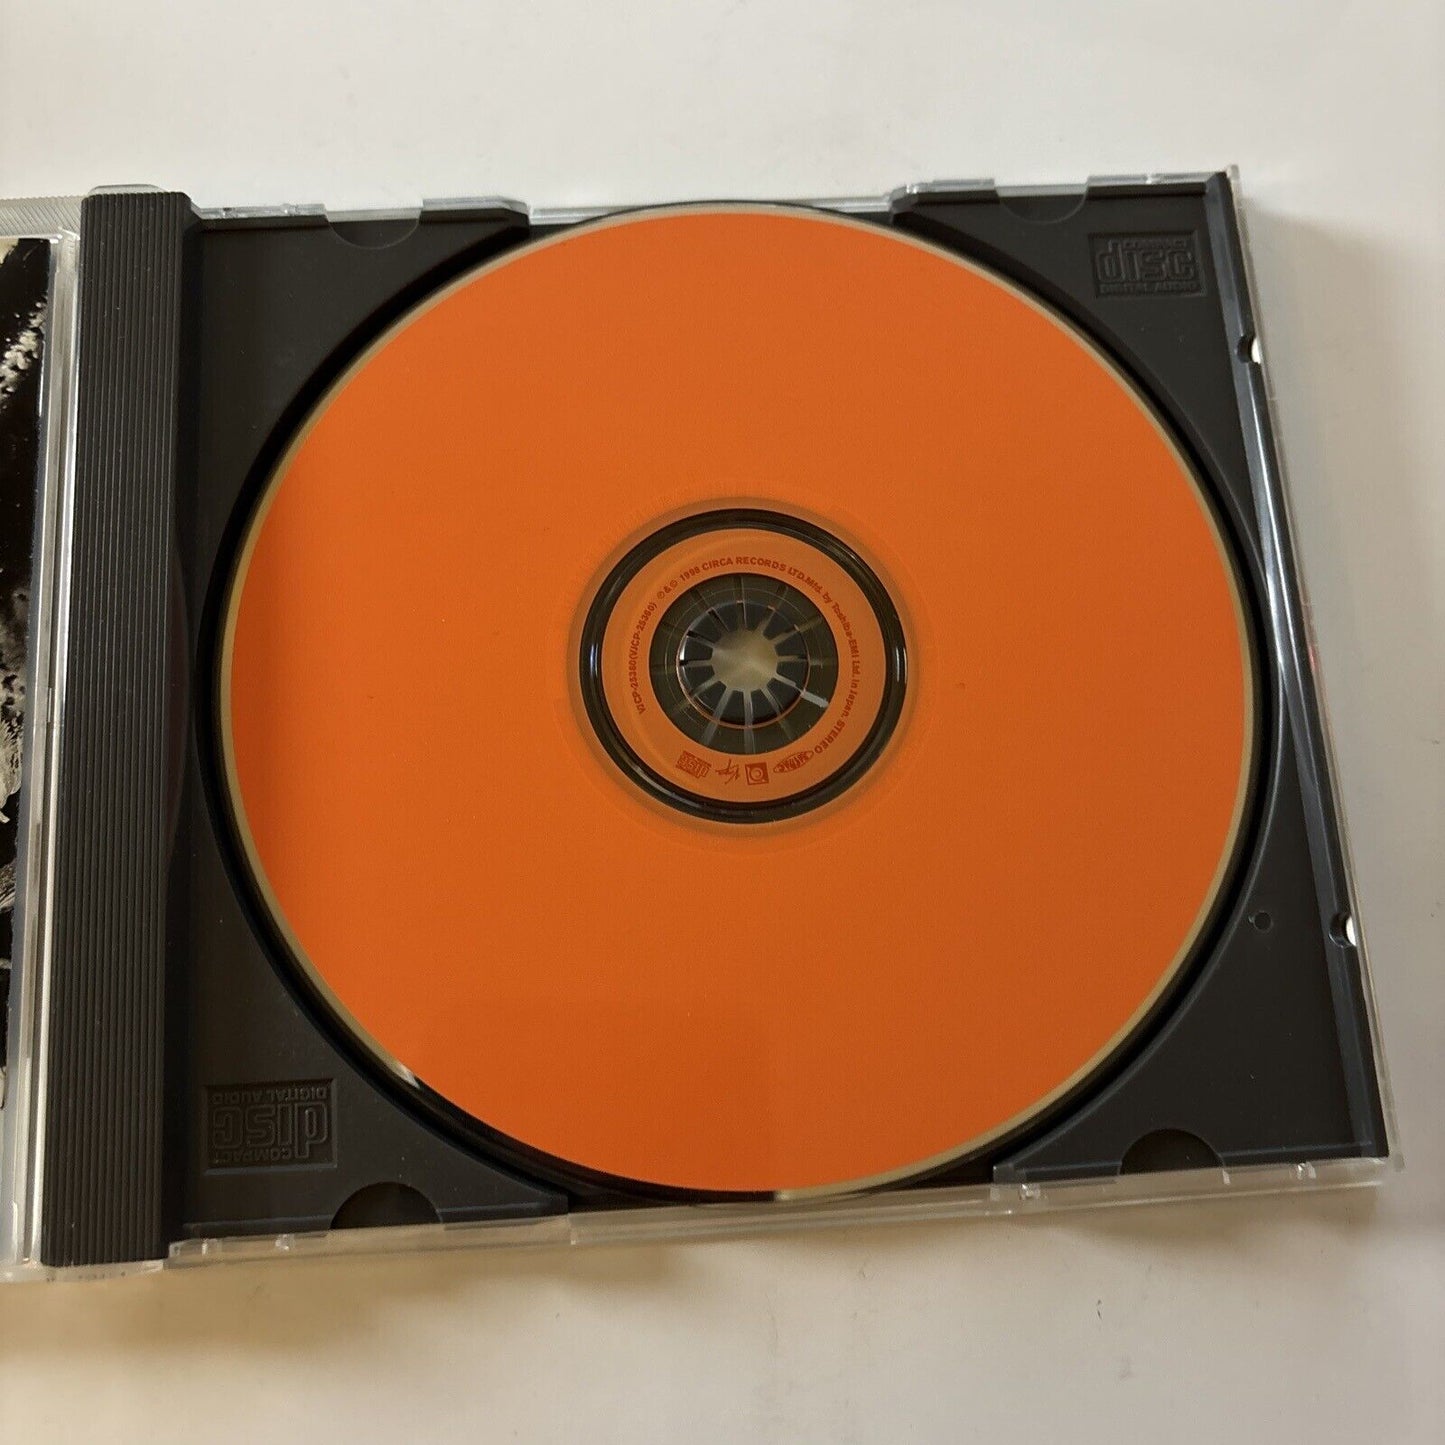 Massive Attack - Mezzanine (CD, 1998) Obi with Japan only Bonus Track VJCP-25360